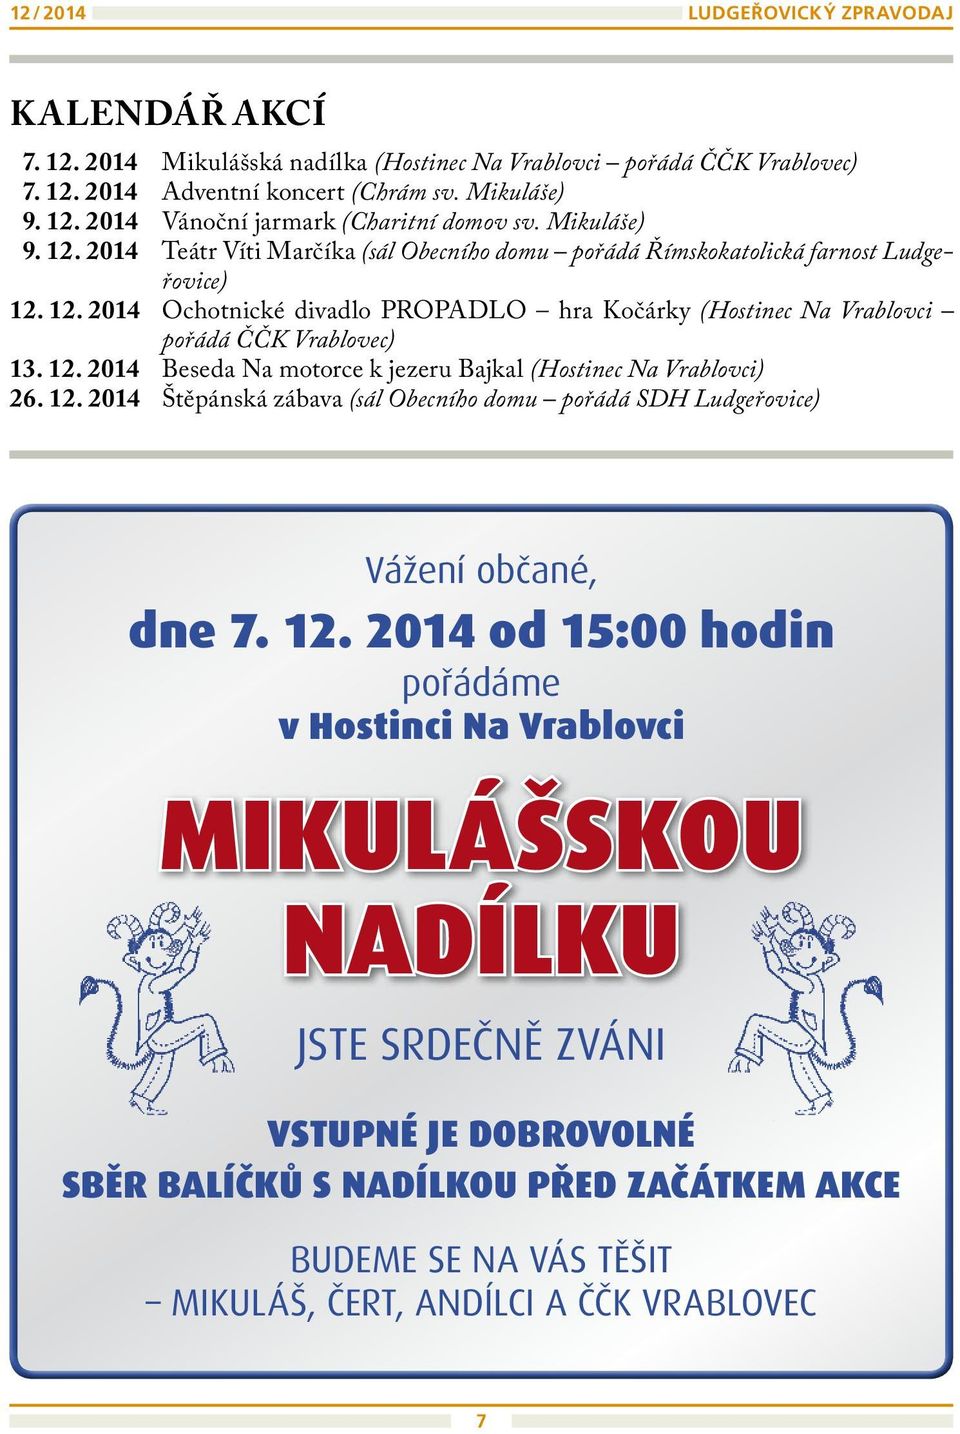 12. 2014 Beseda Na motorce k jezeru Bajkal (Hostinec Na Vrablovci) 26. 12.